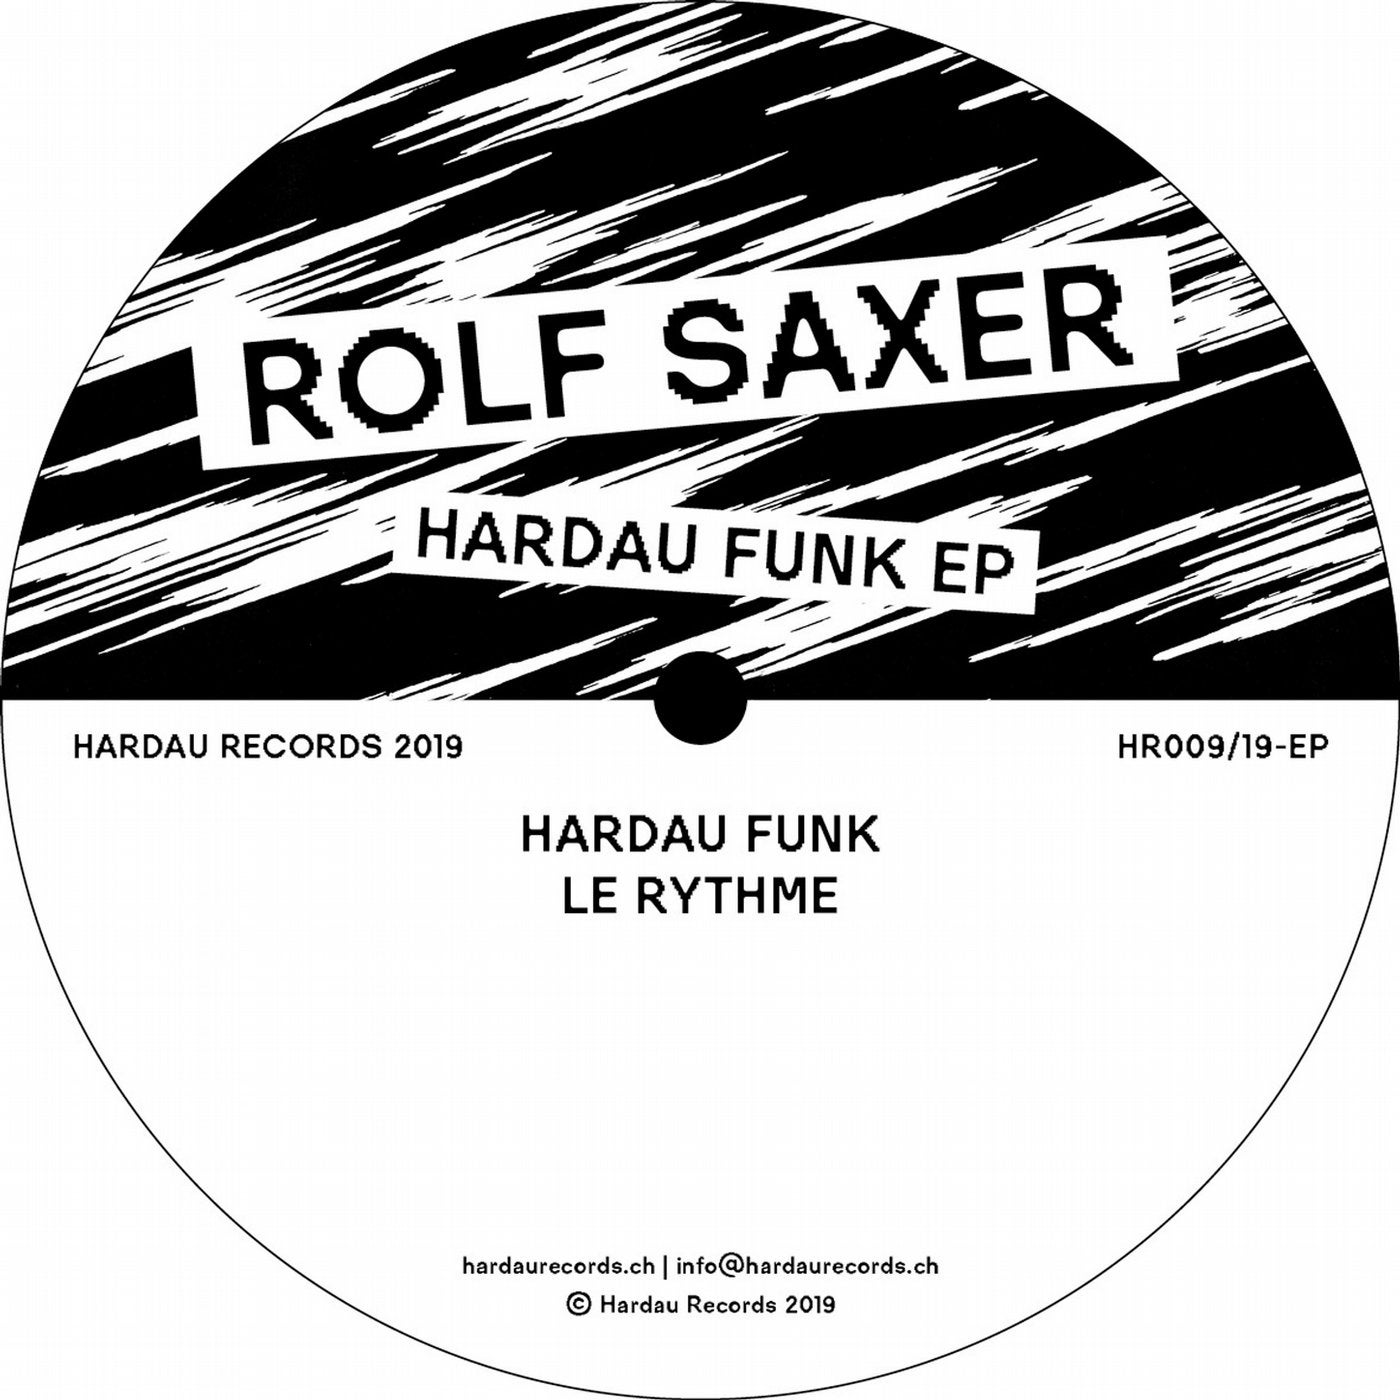 Hardau Funk EP